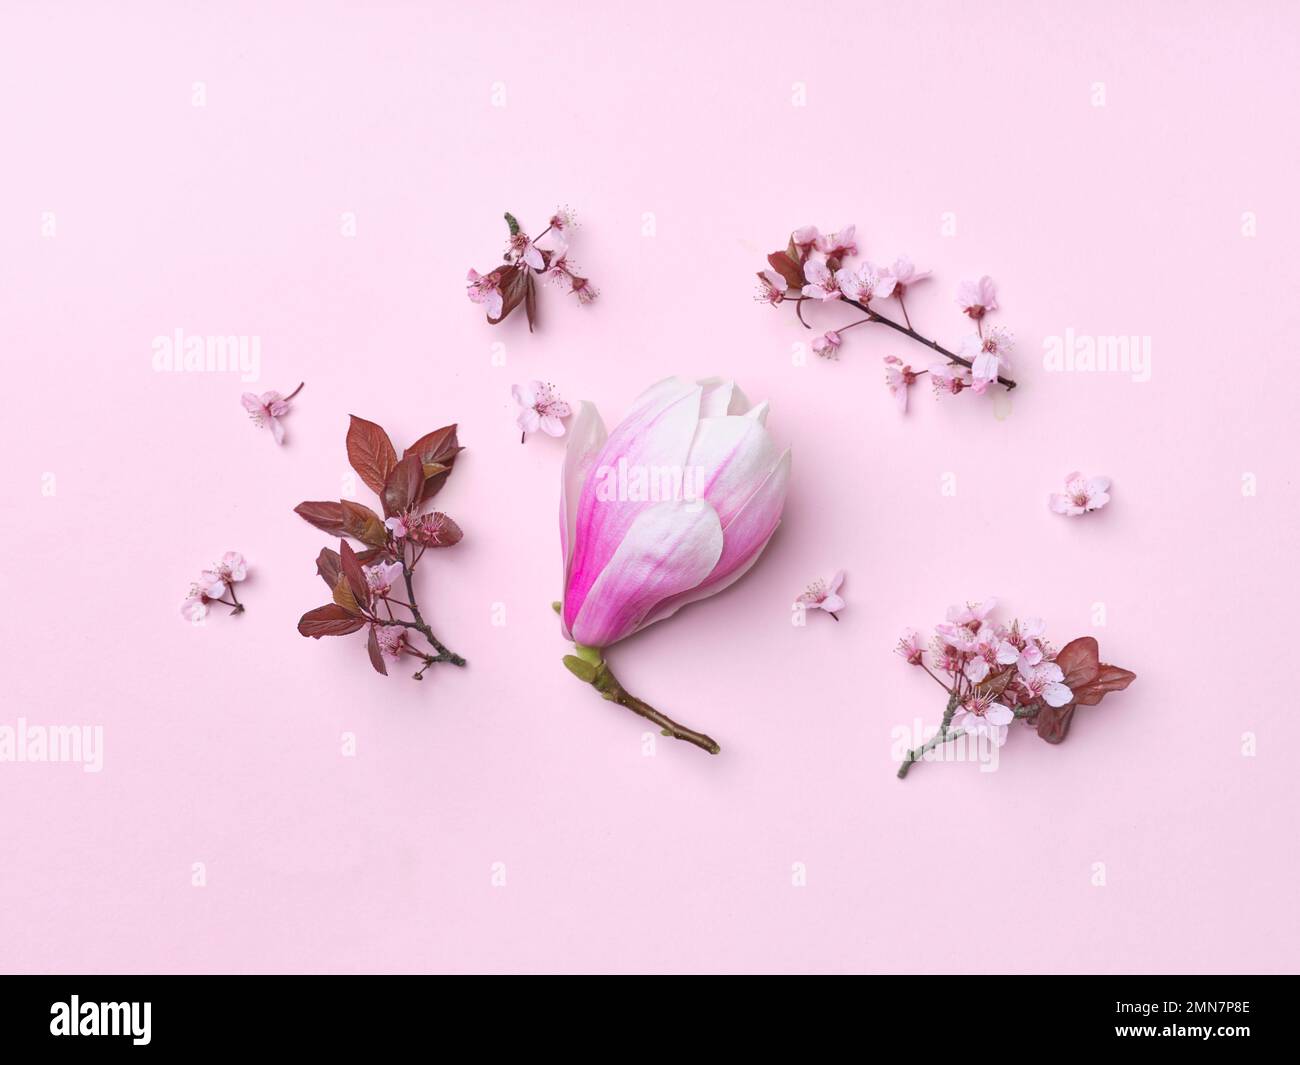 Motif de fleurs de cerisier et de fleurs de magnolia sur fond rose. Mise à plat. Vibration du ressort. Banque D'Images